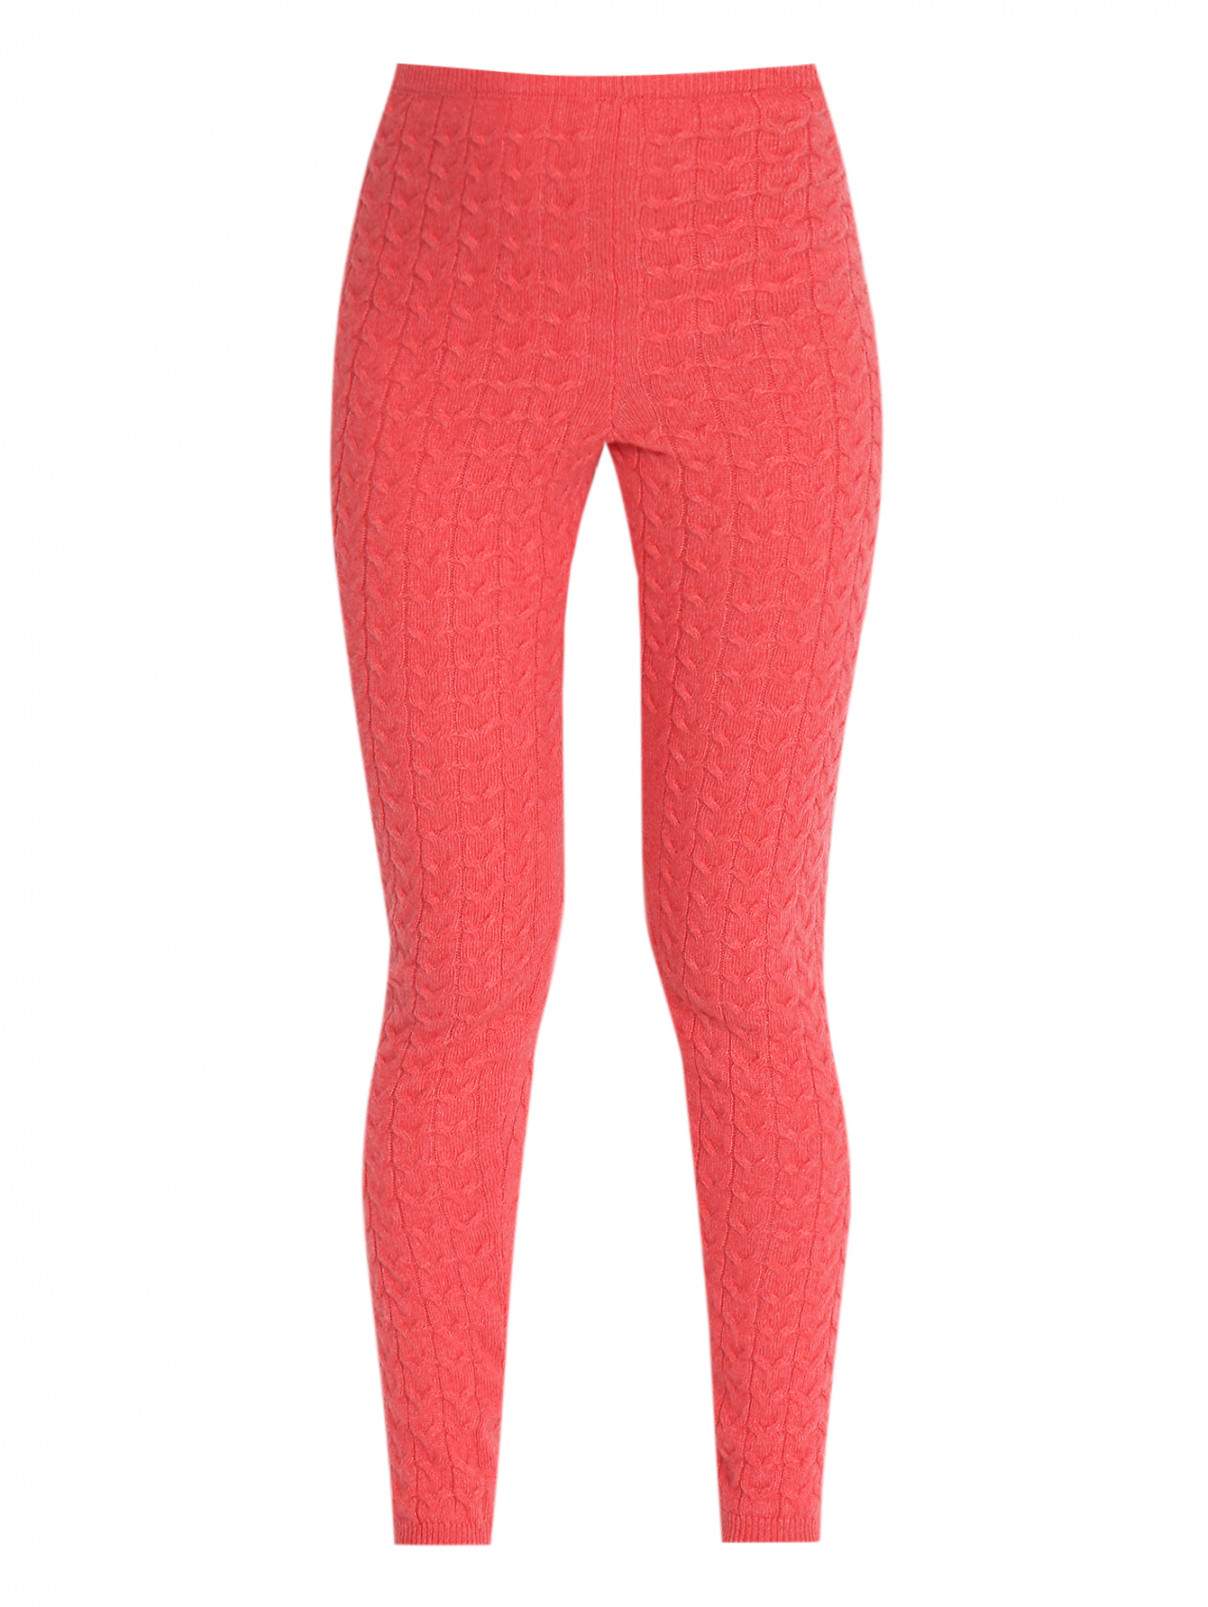 Фактурные брюки из кашемира Tomax  –  Общий вид  – Цвет:  Оранжевый